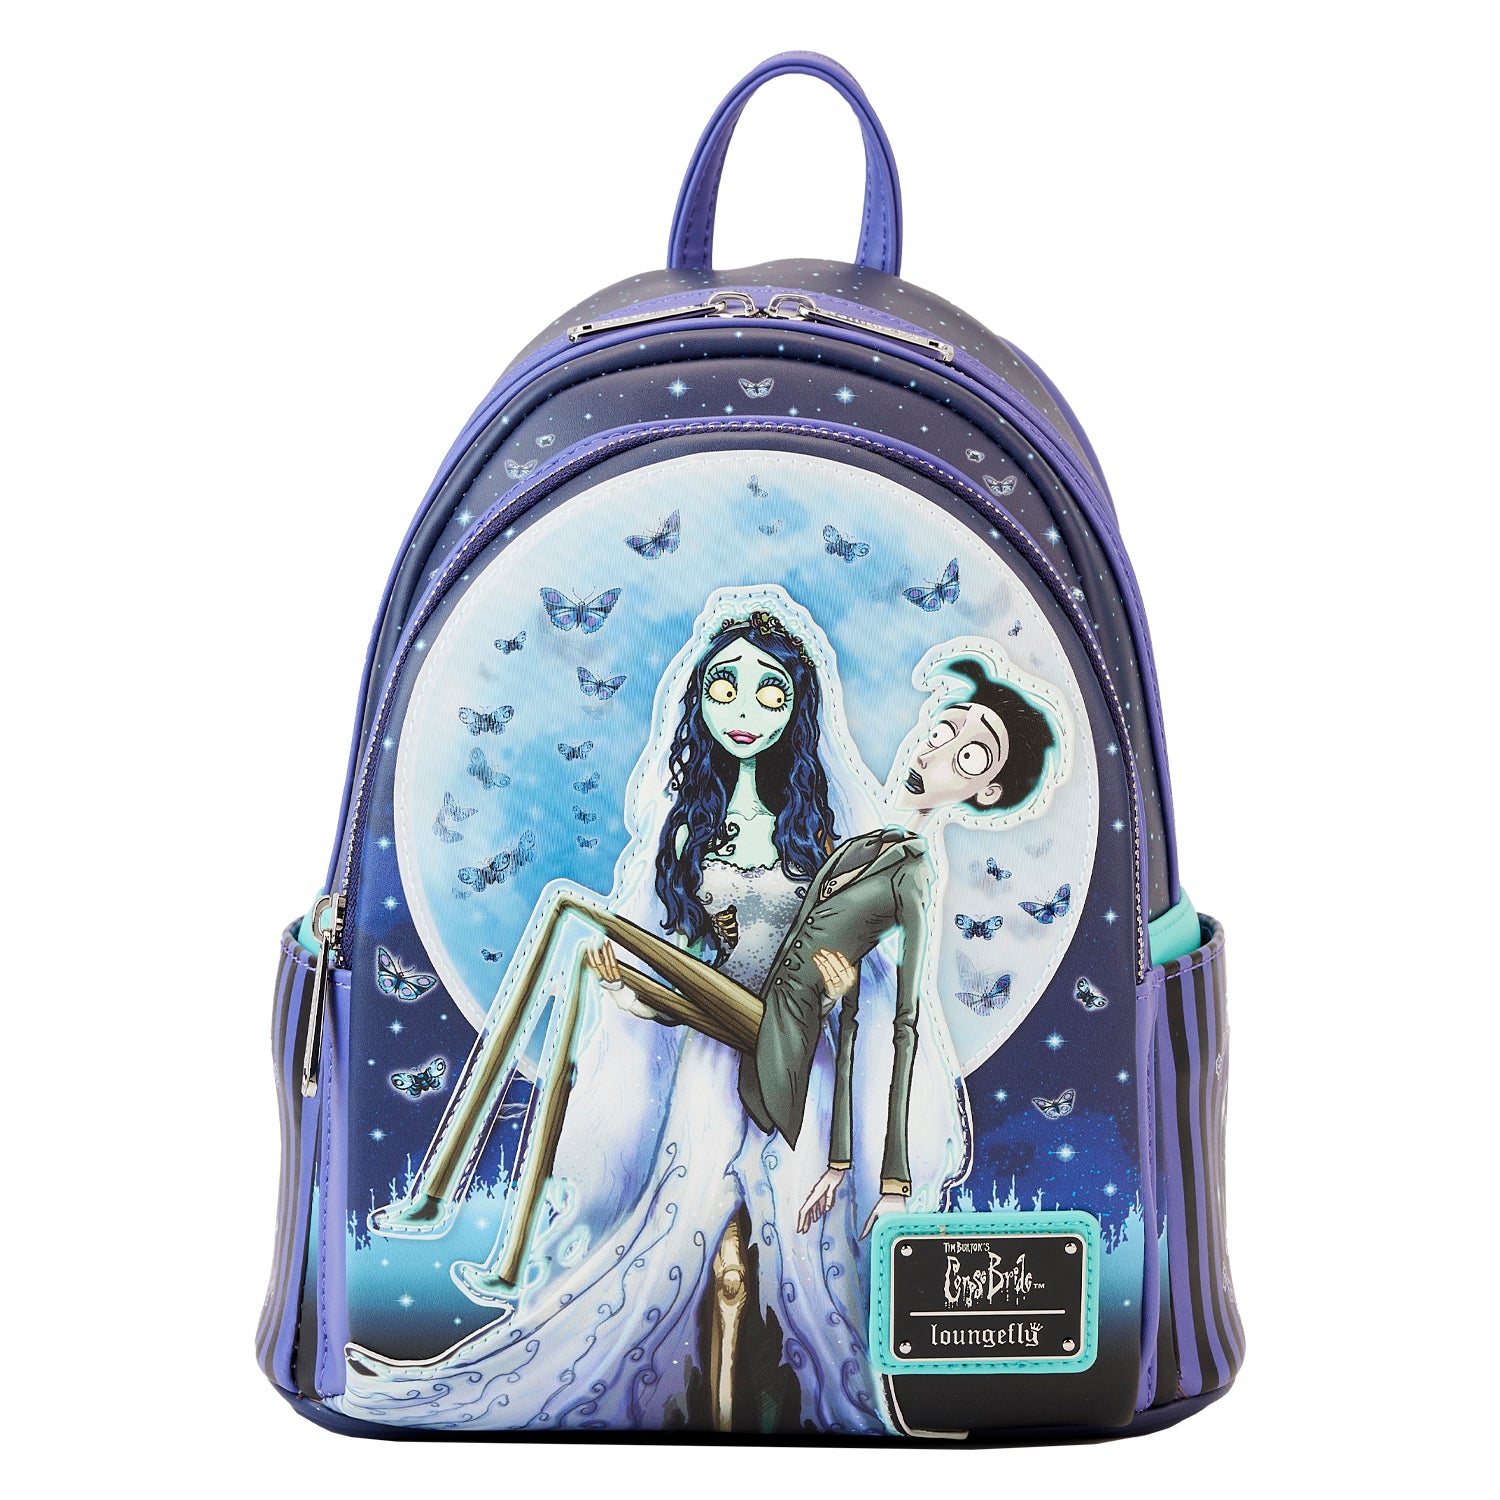 Warner Bros | Corpse Bride Moon Mini Backpack